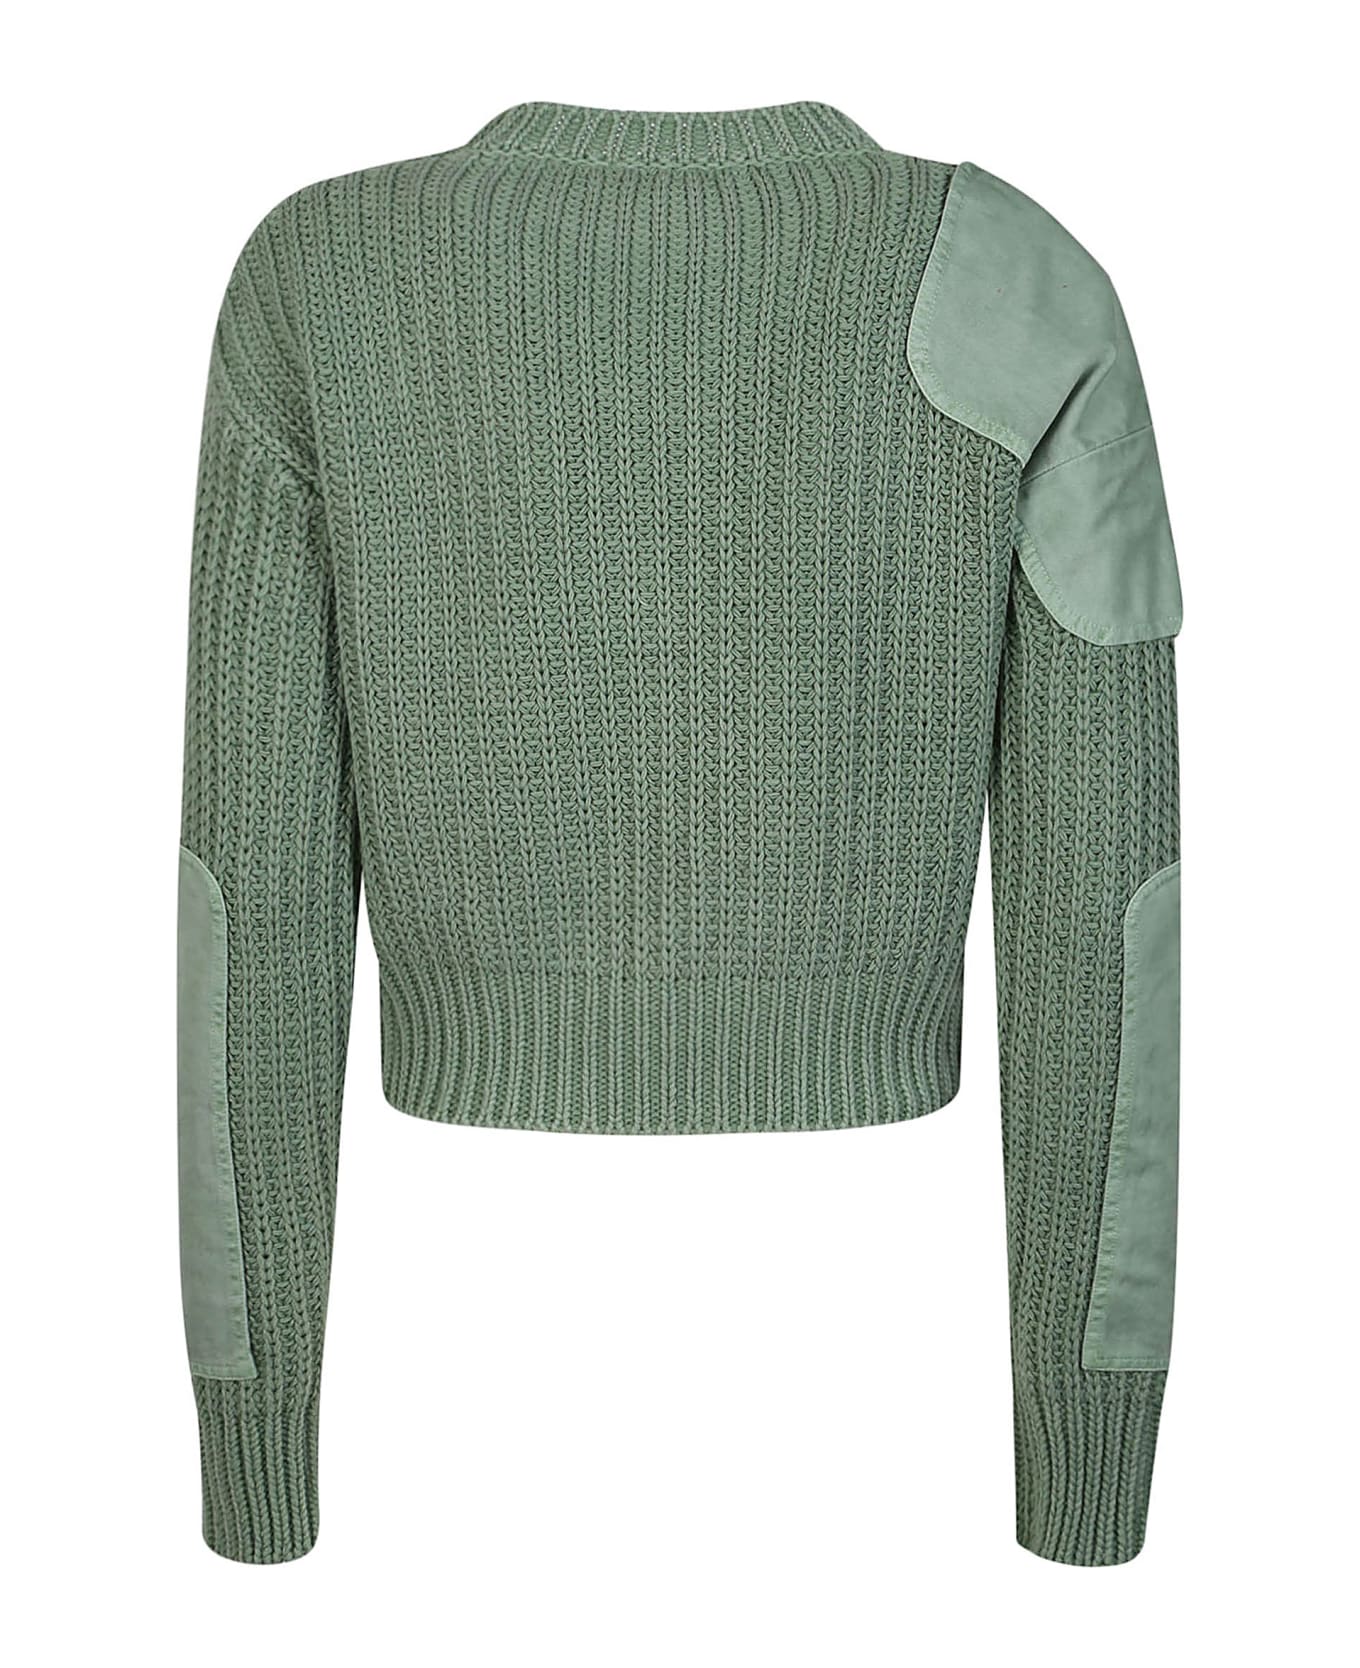 Max Mara Abisso1234 Sweater - Salvia Unito